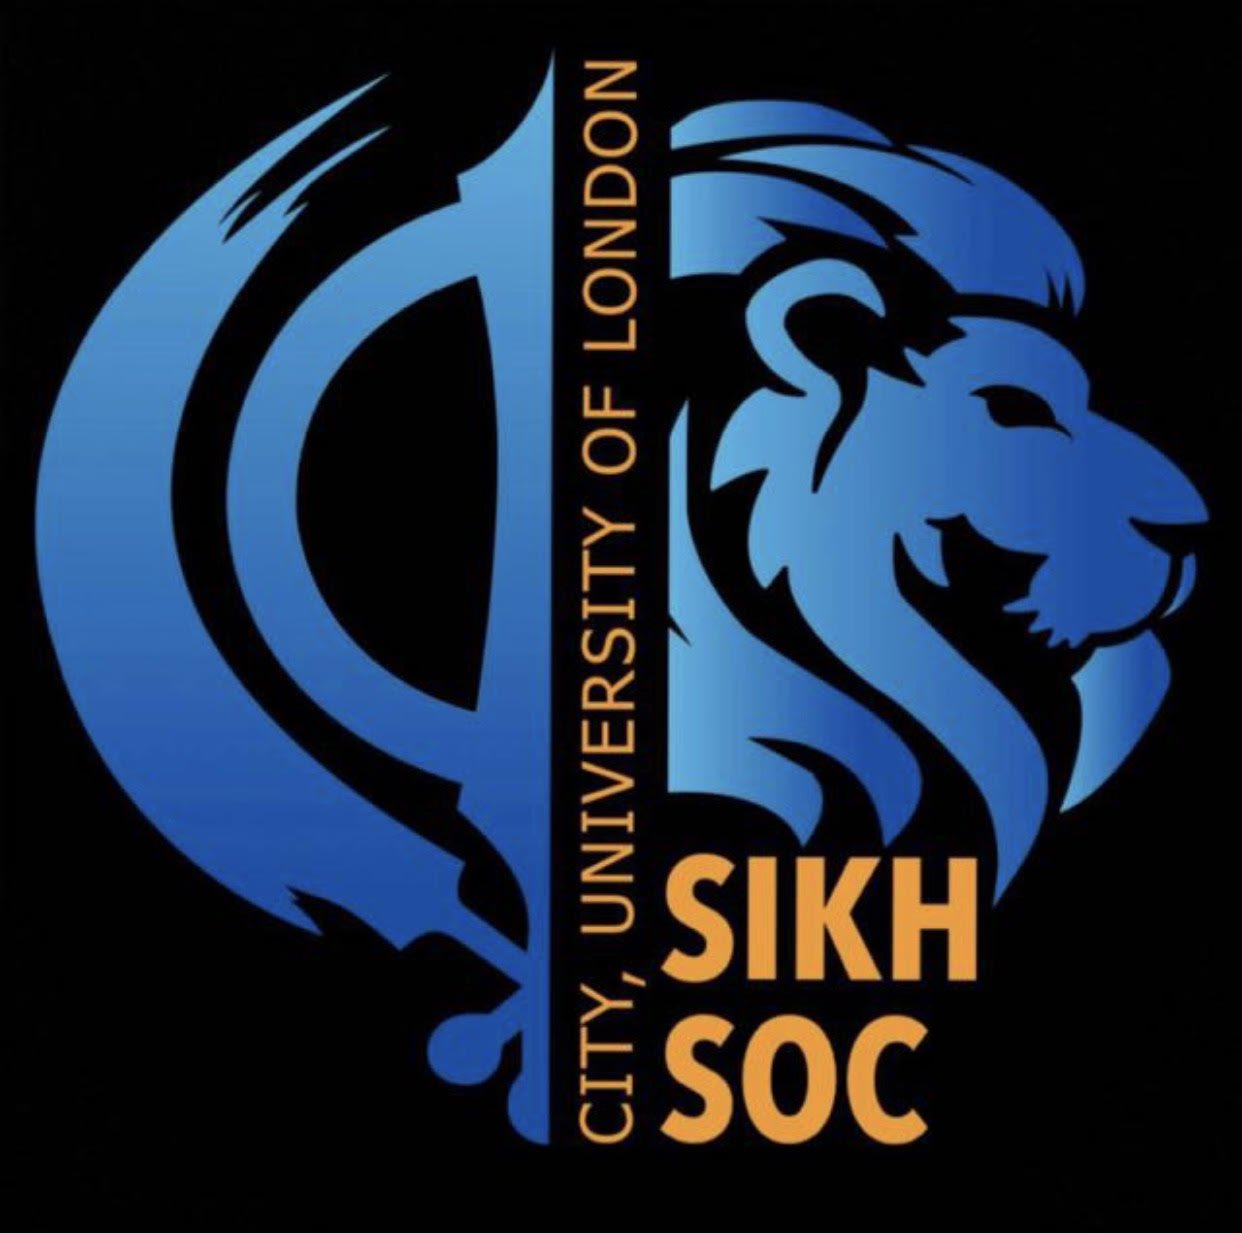 City, University of London Sikh Society